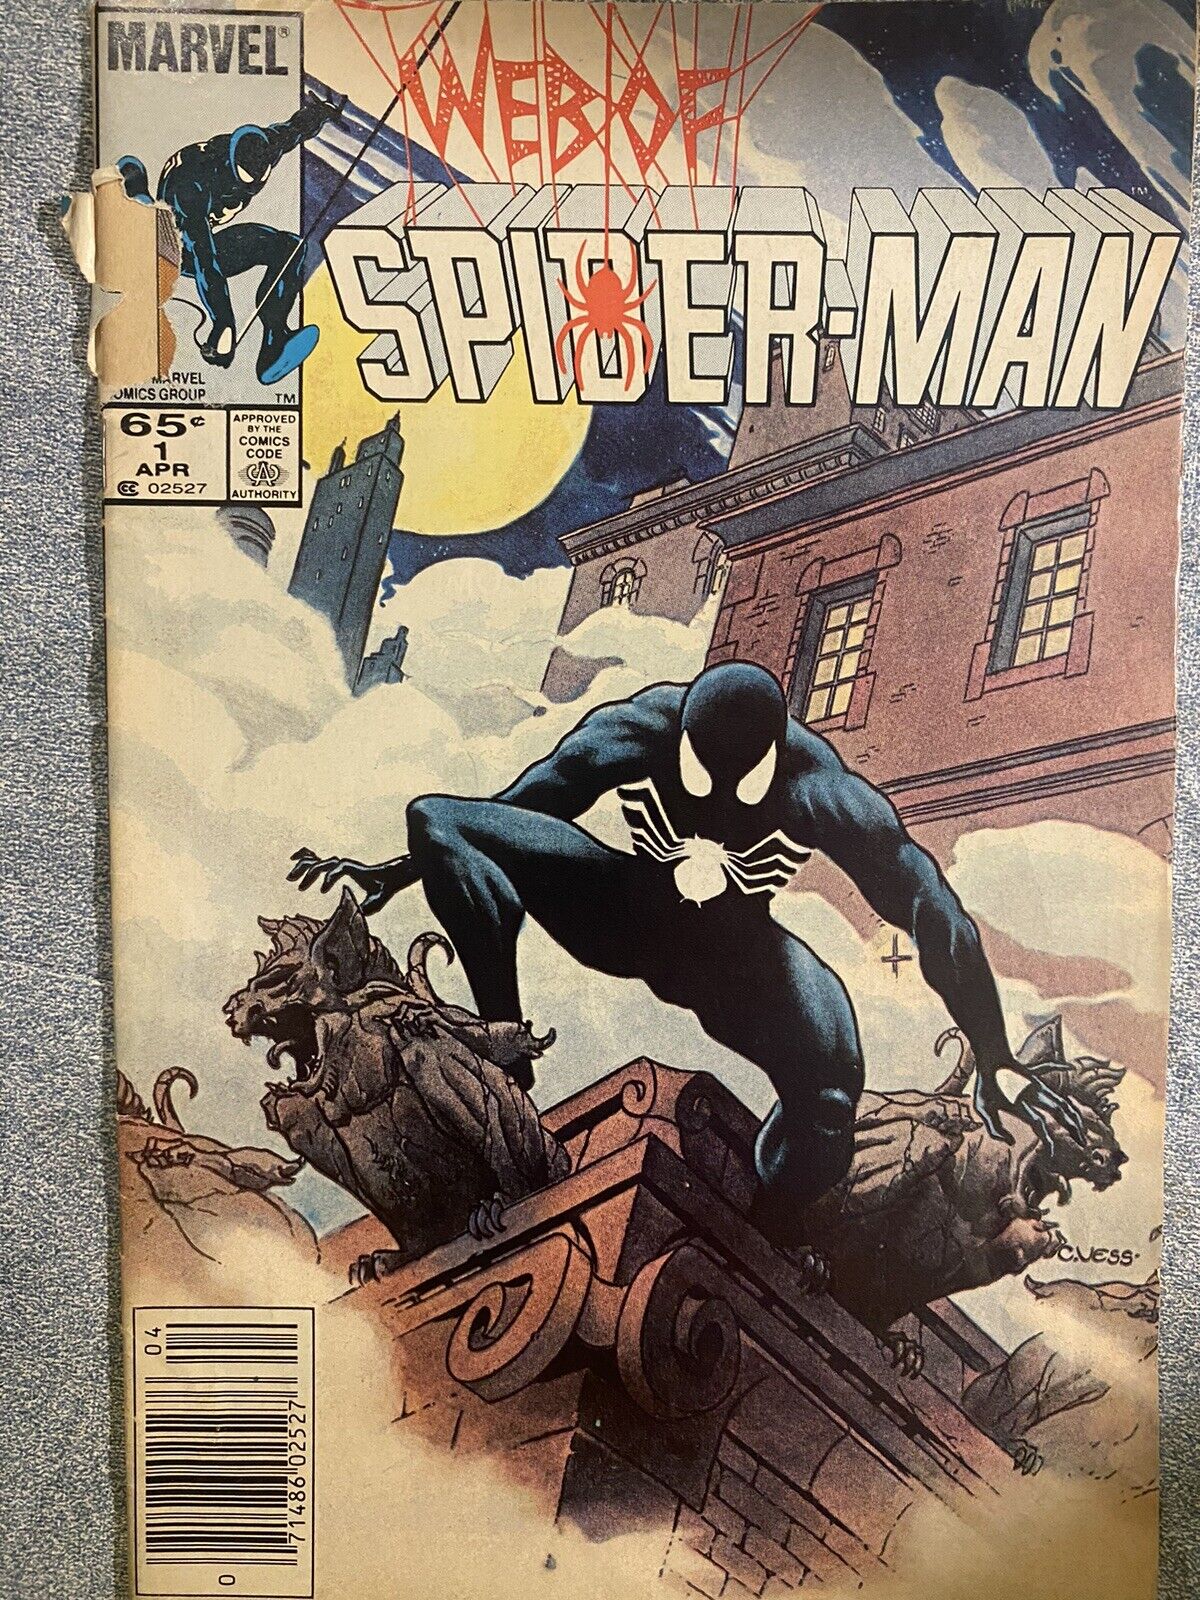 Web of Spider-Man #1 (Marvel Comics April 1985)